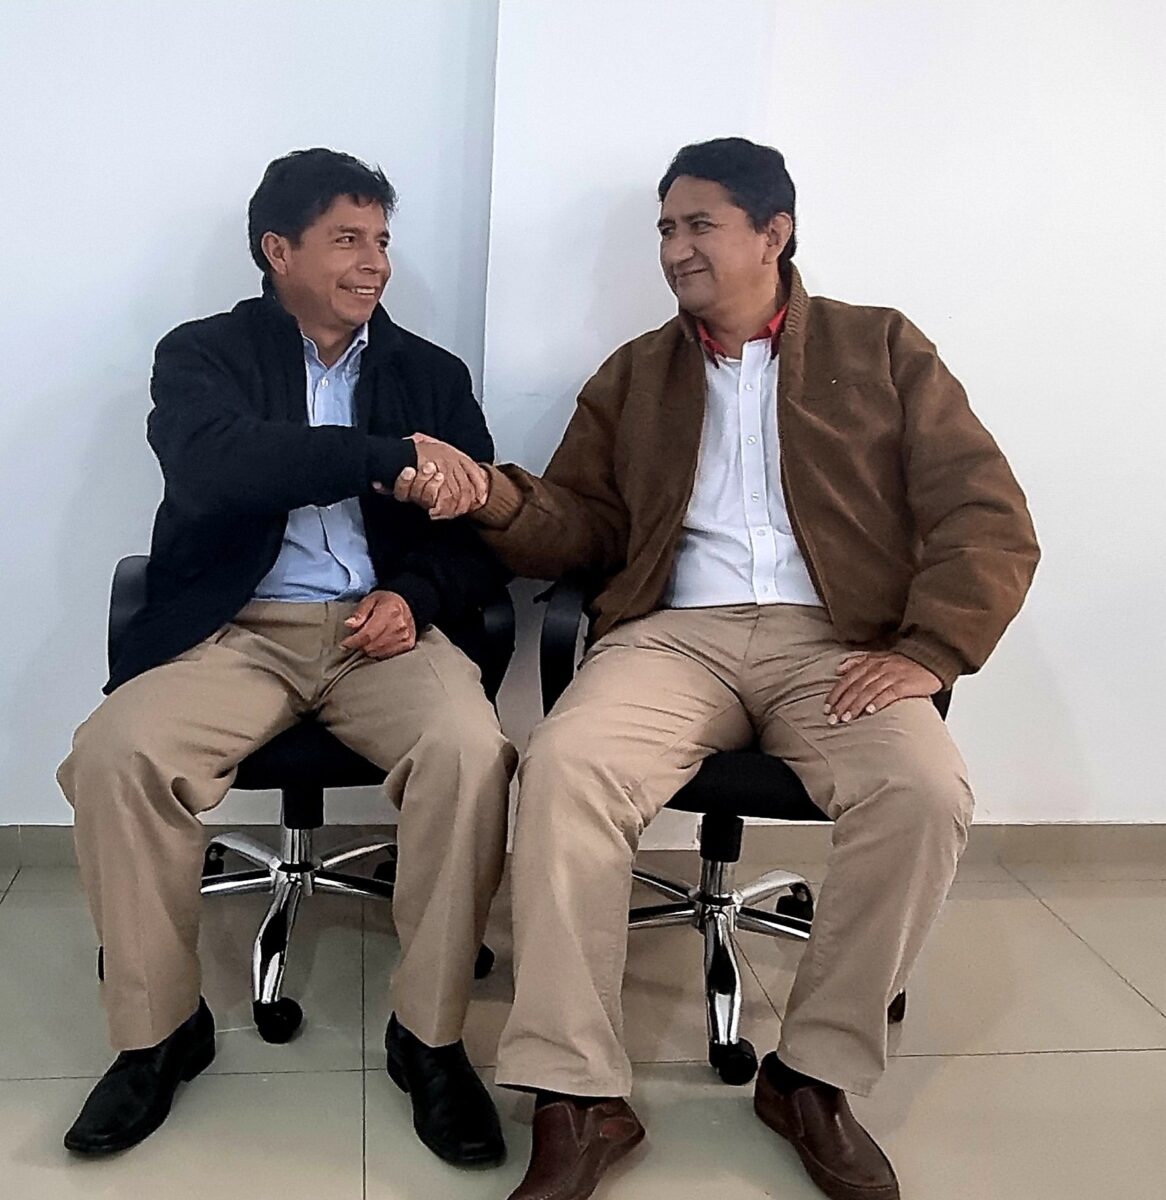 El partido Perú Libre y el nuevo presidente Por Vladimir Cerrón Rojas (*) | Facebook